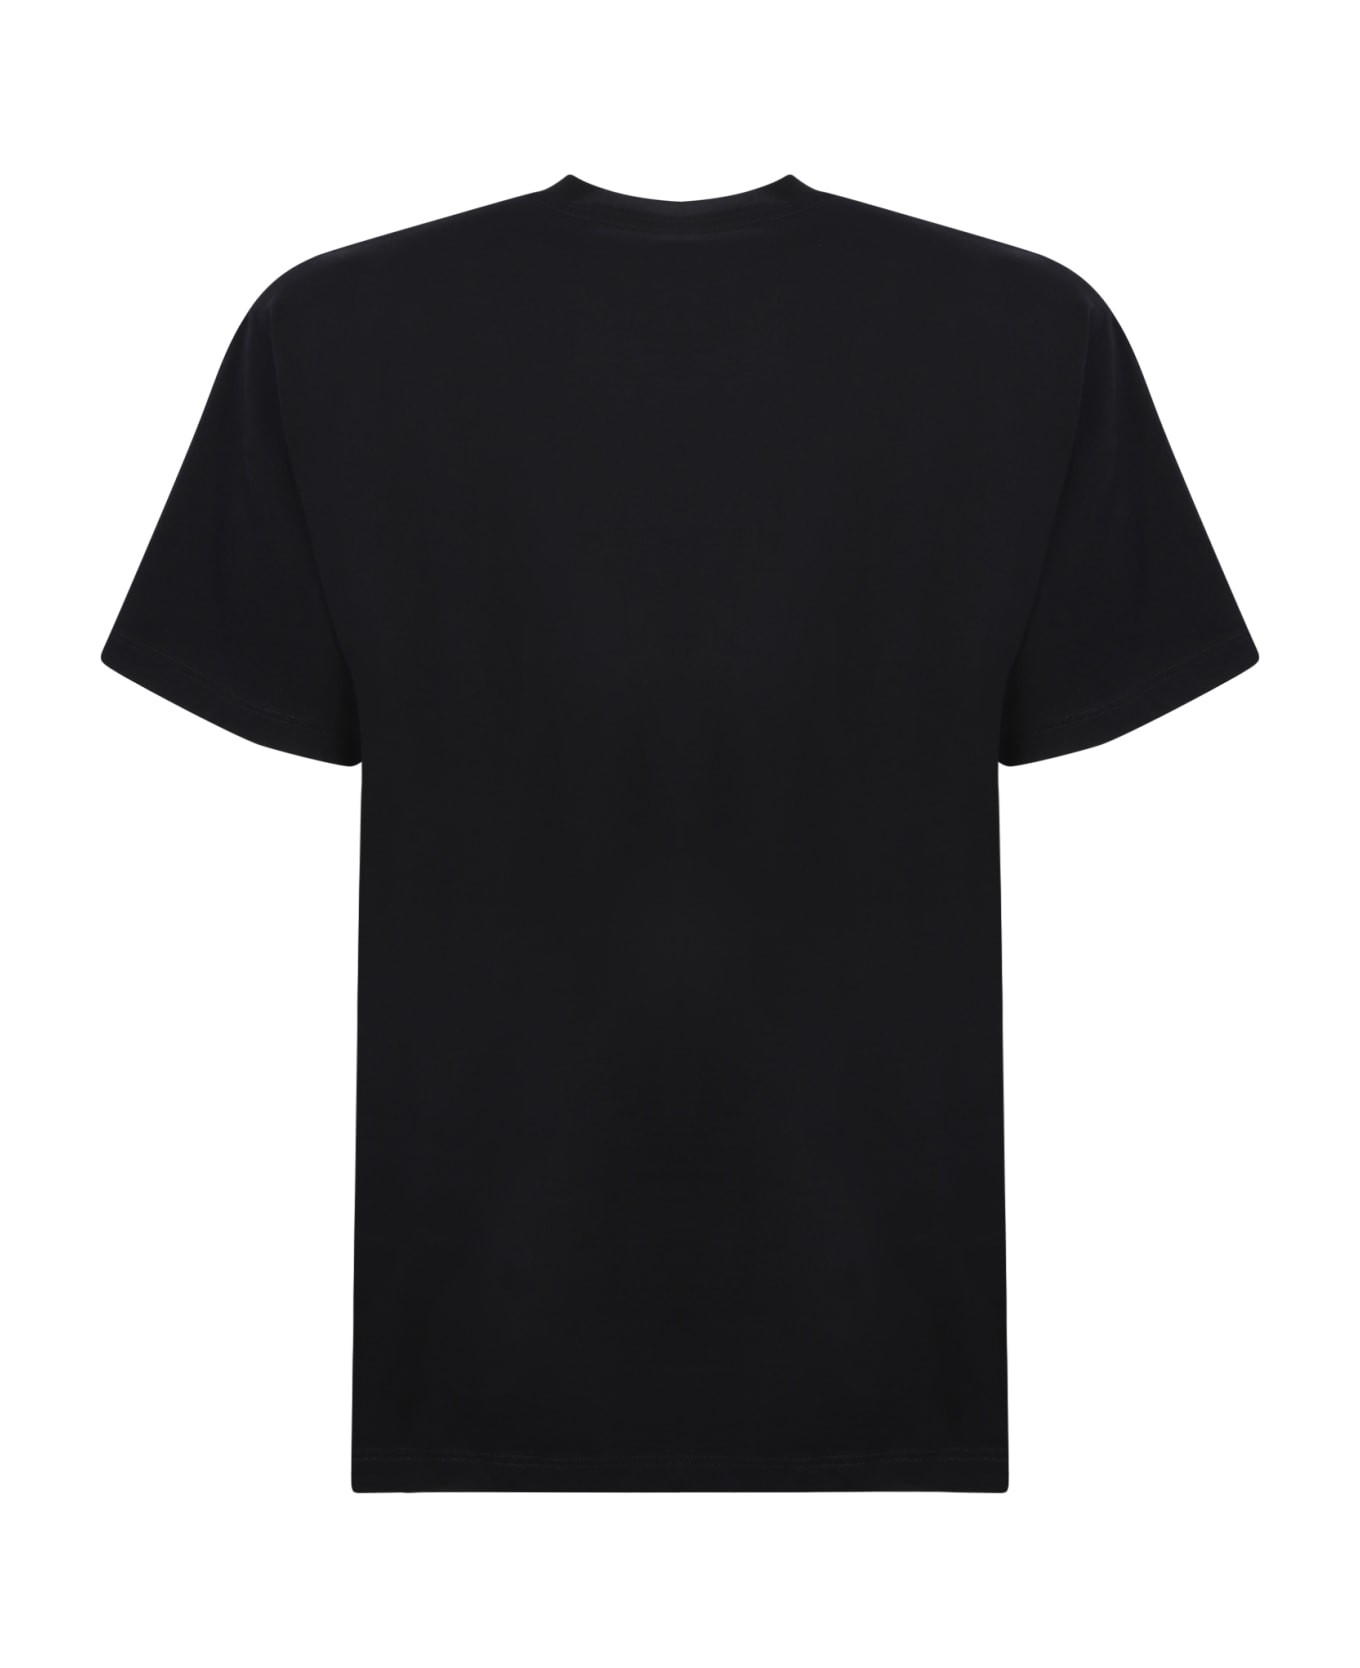 Aries No Problemo T-shirt - Black